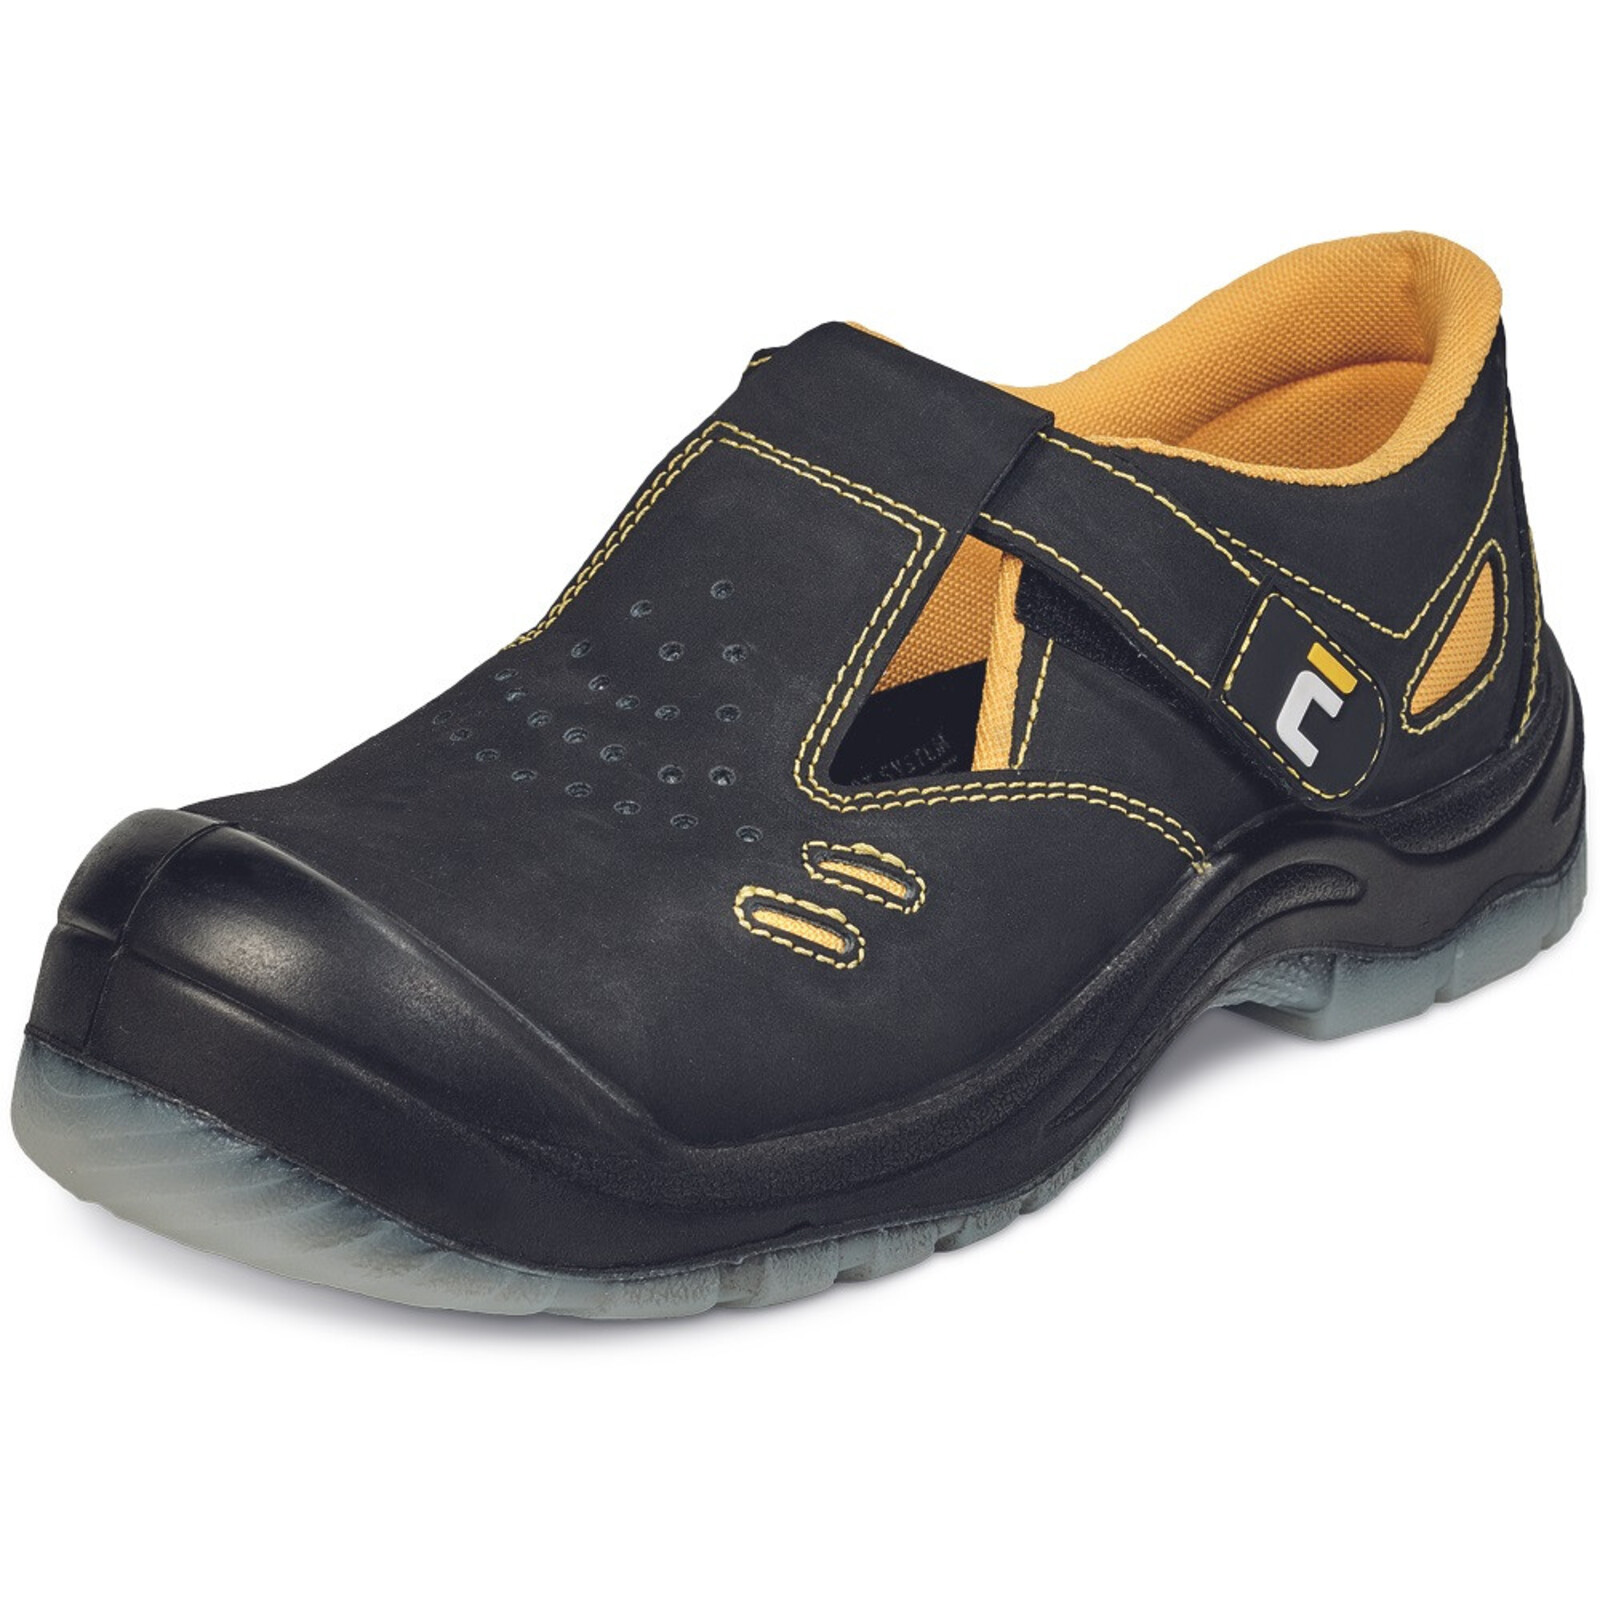 Bezpečnostné sandále Cerva BK TPU MF S1P SRC - veľkosť: 45, farba: čierna/žltá